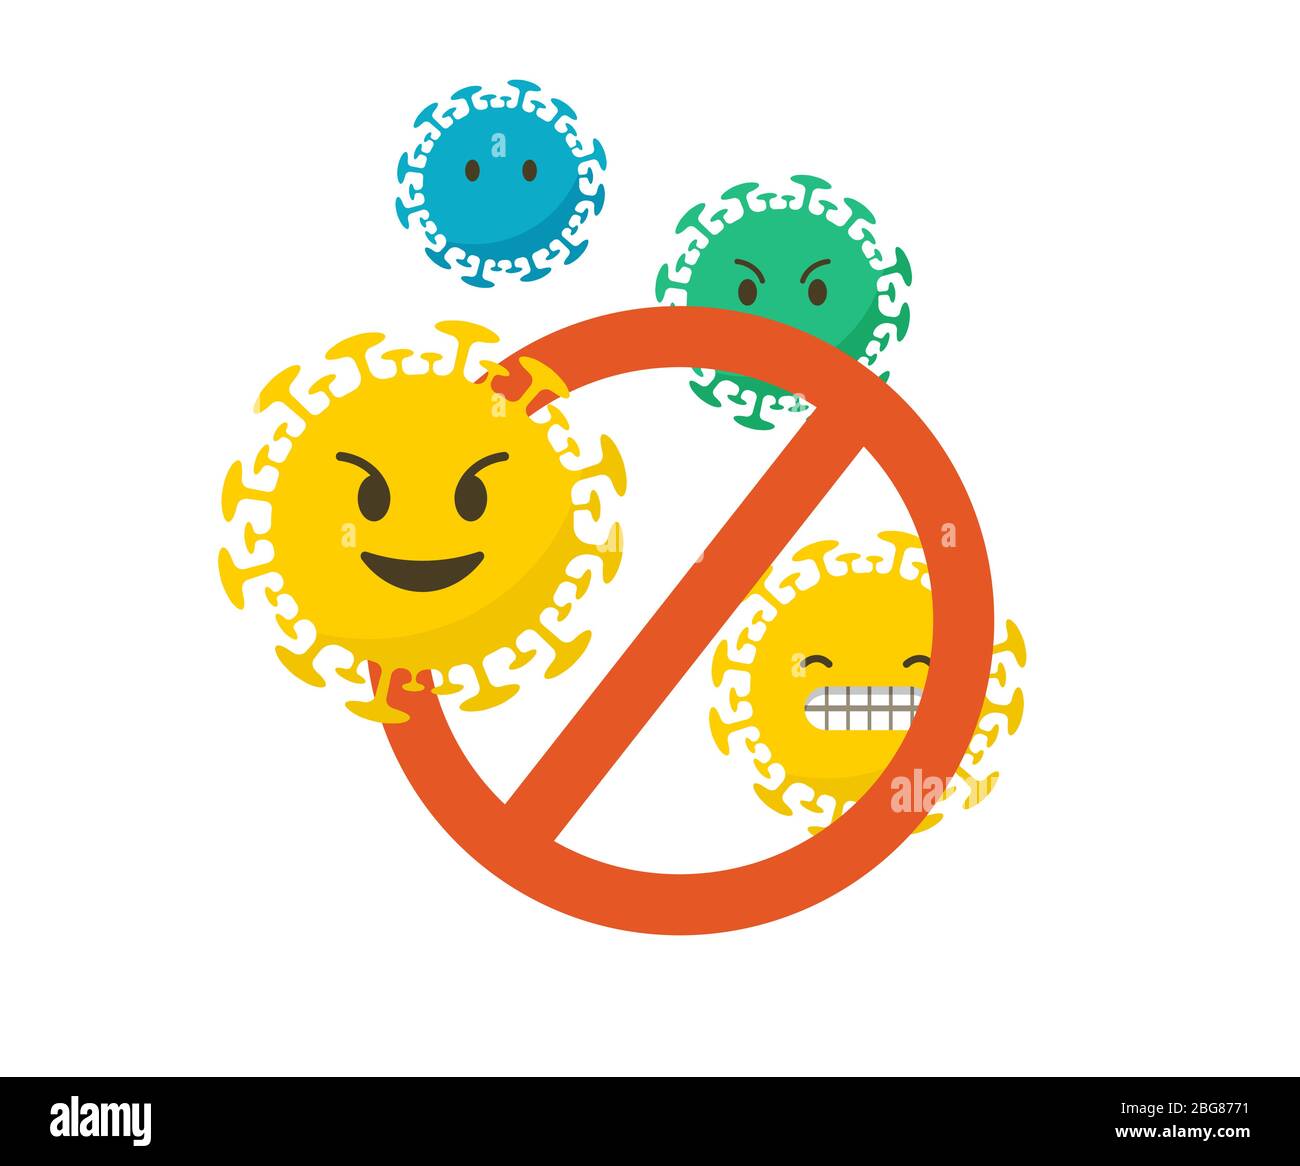 Stoppen Sie die Coronavirus konzeptionelle Emoji-Symbole gesetzt. Vektorgrafik, Hintergrund und Banner Stock Vektor